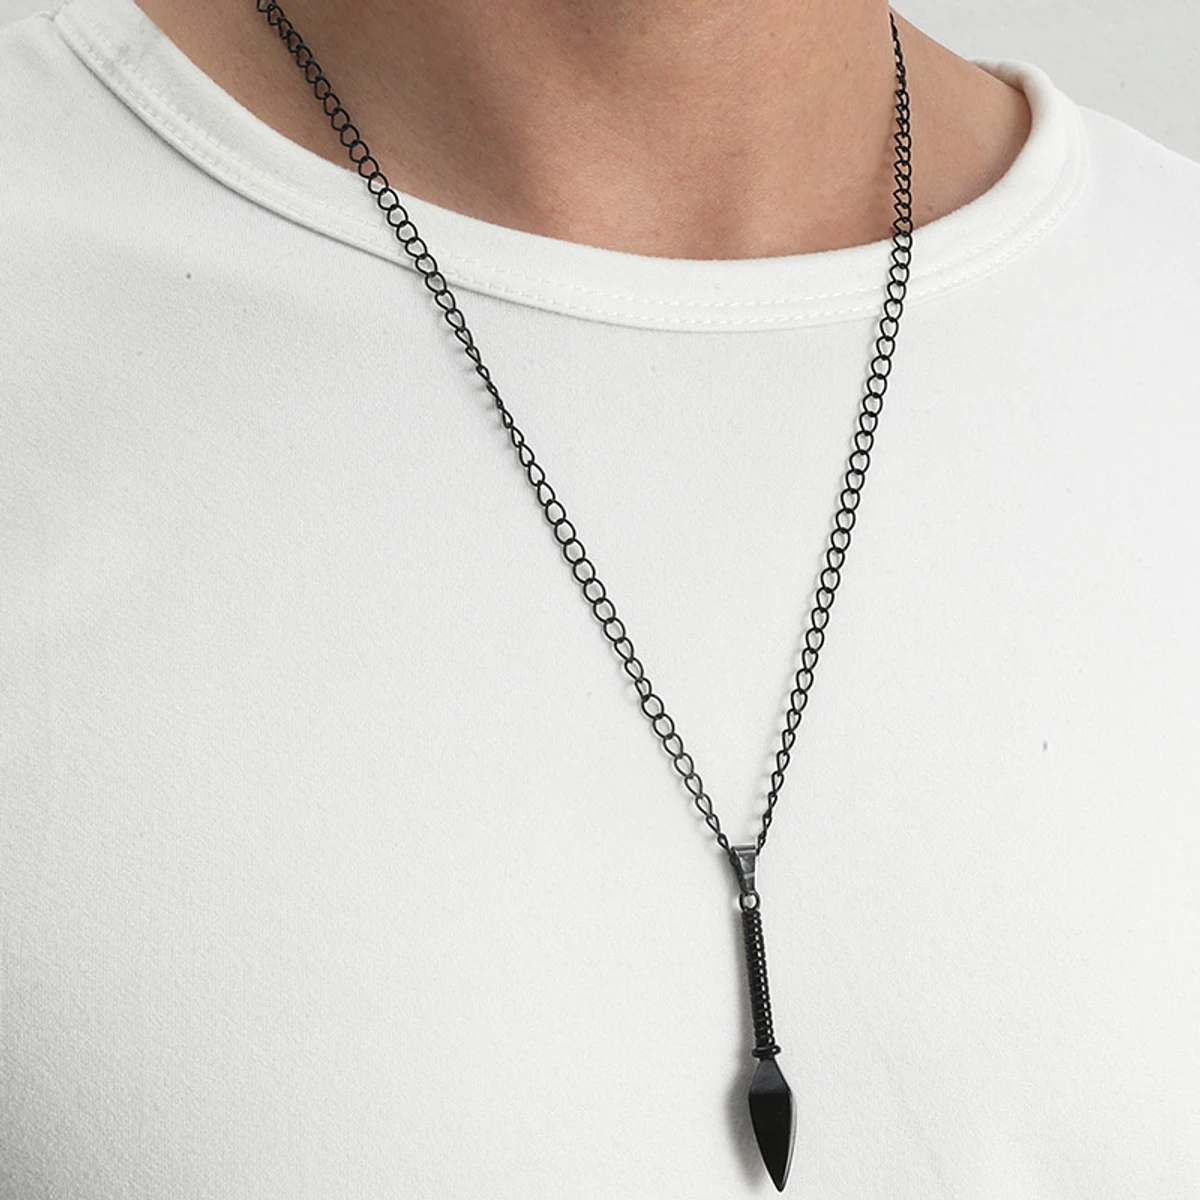 Men's Arrowhead Fashionable Necklace for Men